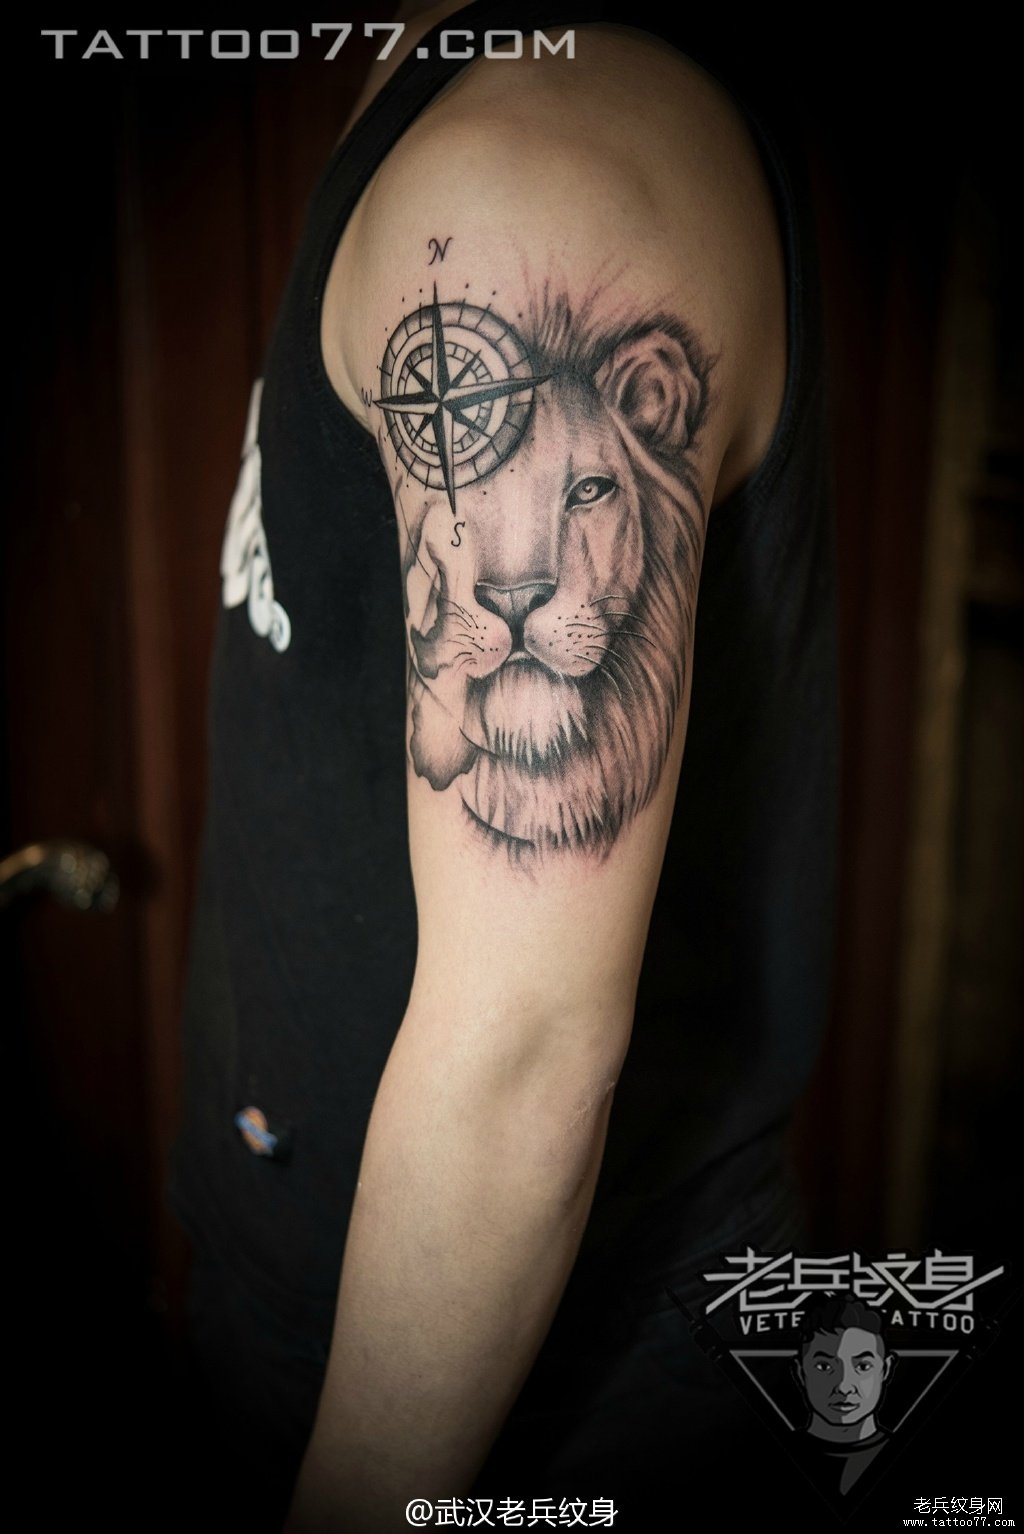 大臂狮子指南针纹身图案作品